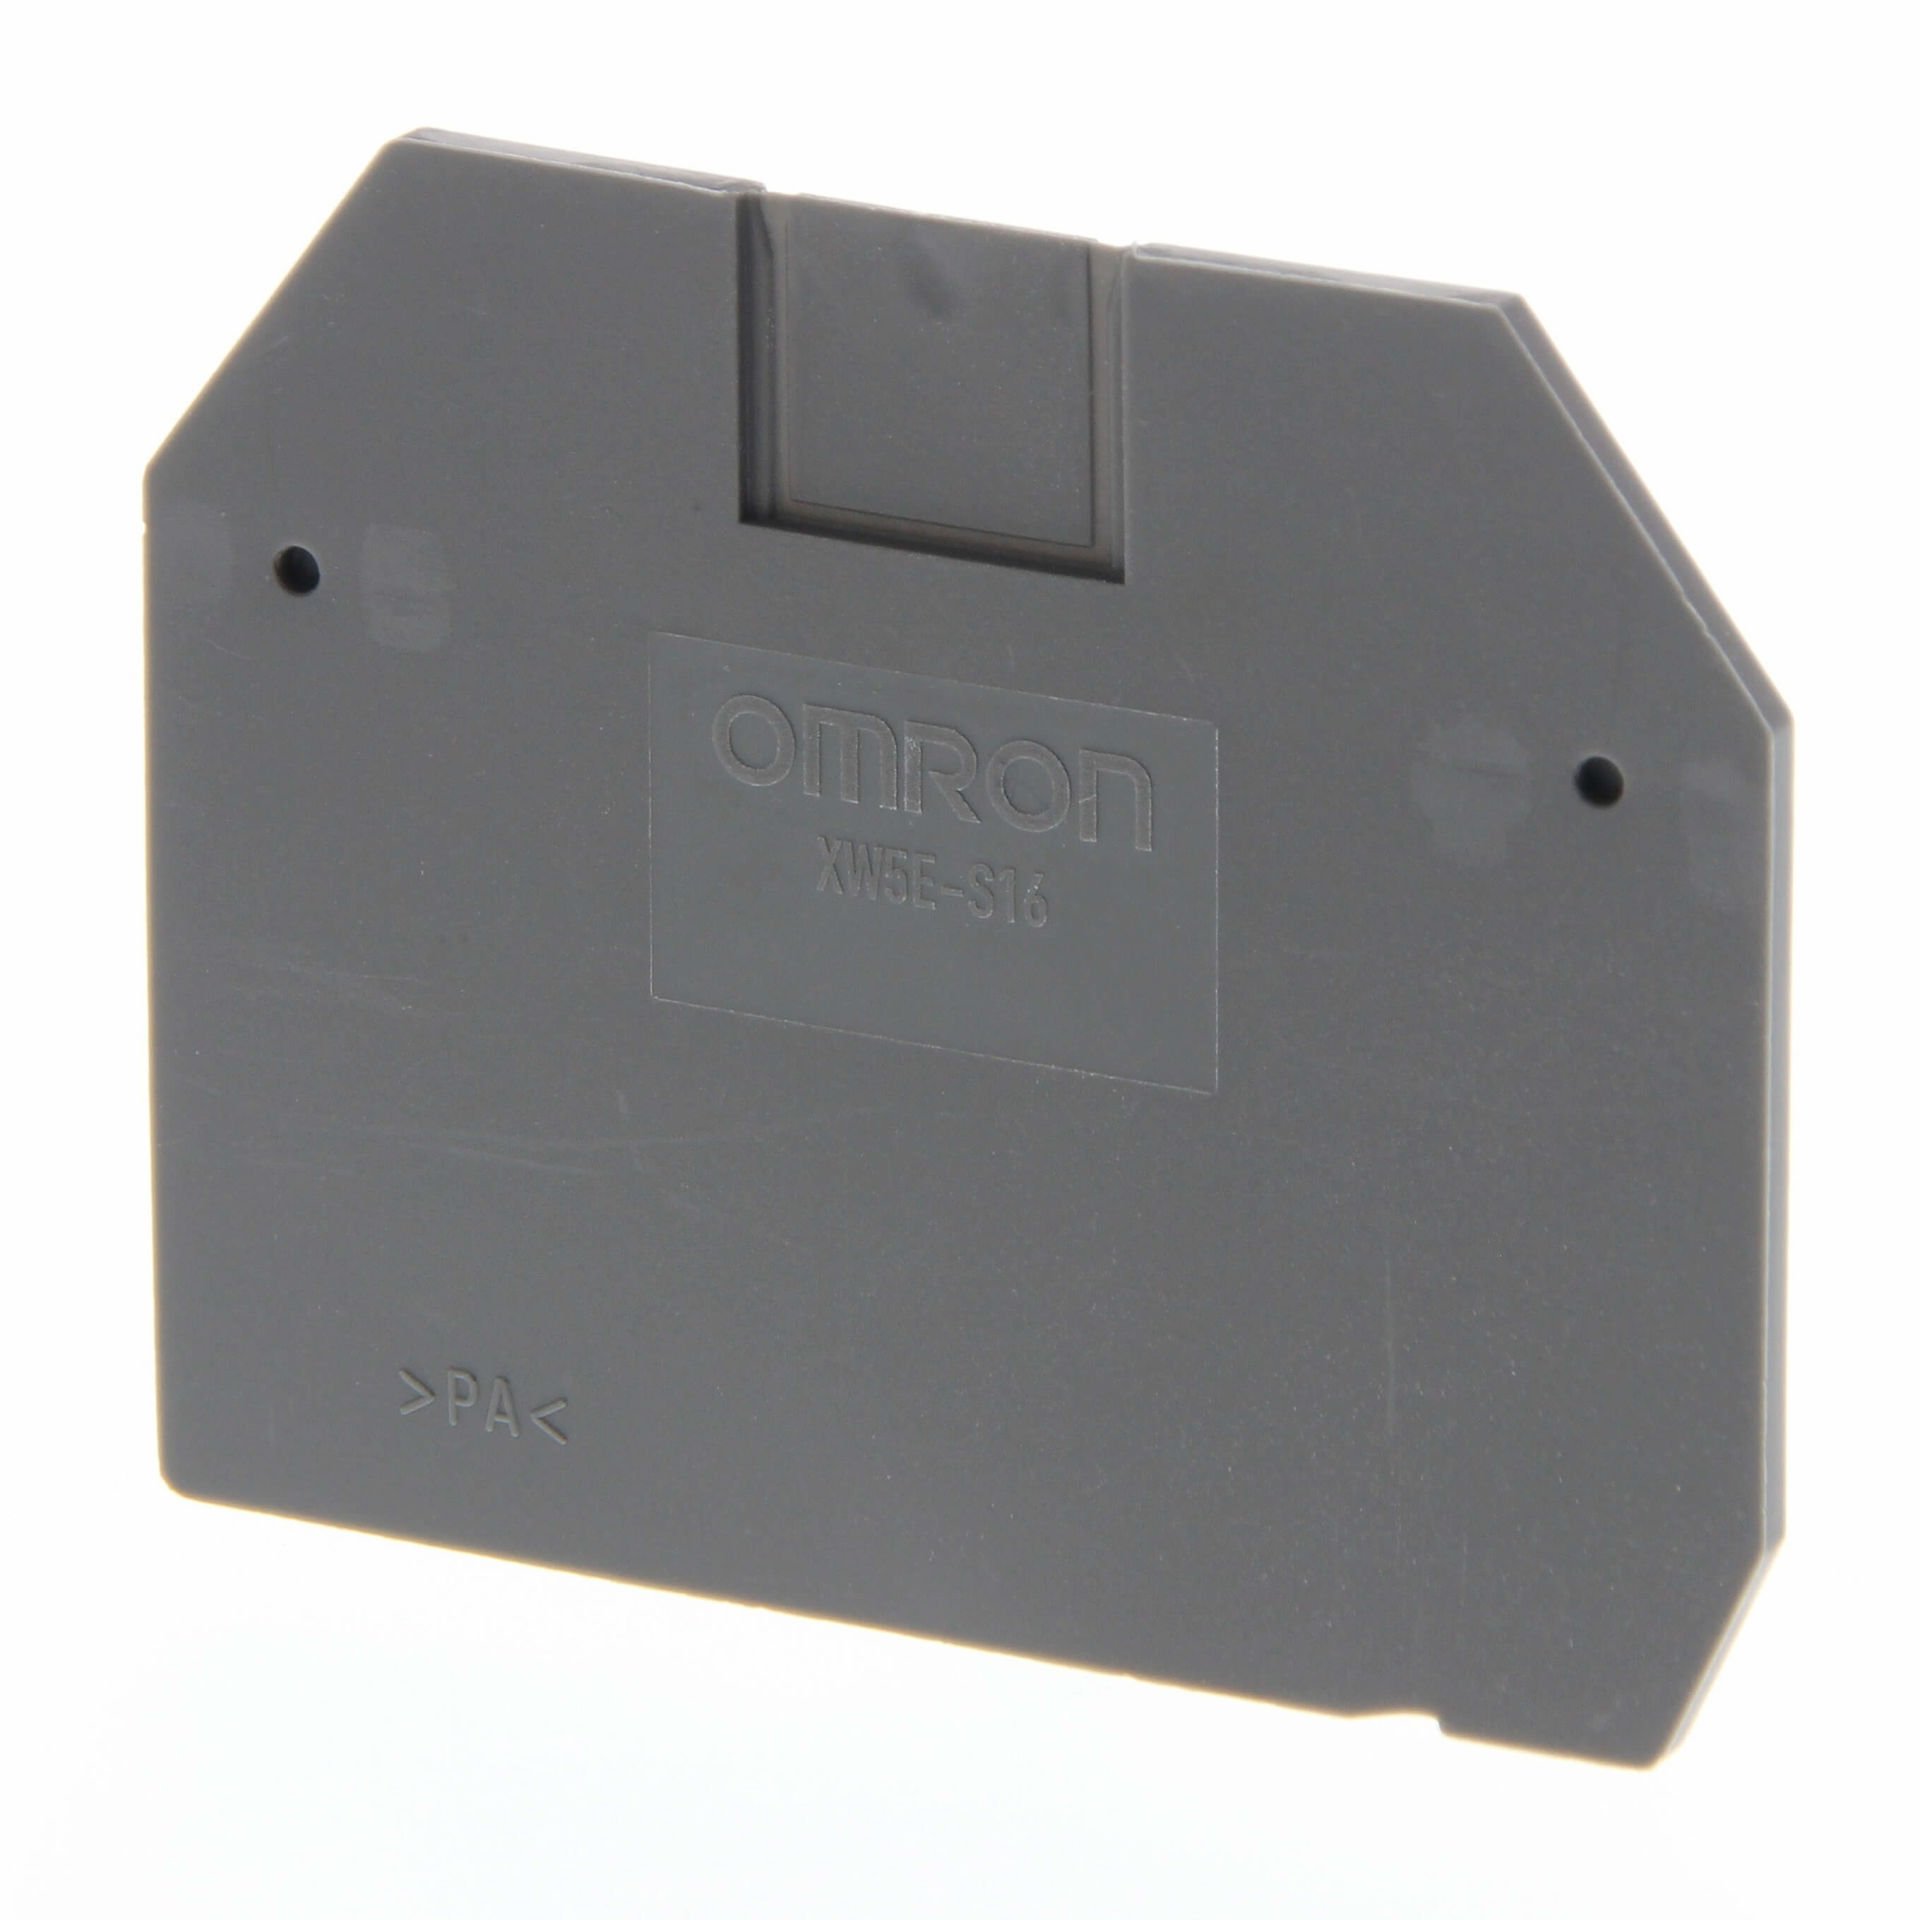 Omron - XW5E-S16  Kapak, 16 mm², 1 giriş-1 çıkış, vidalı klemens ile uyumlu